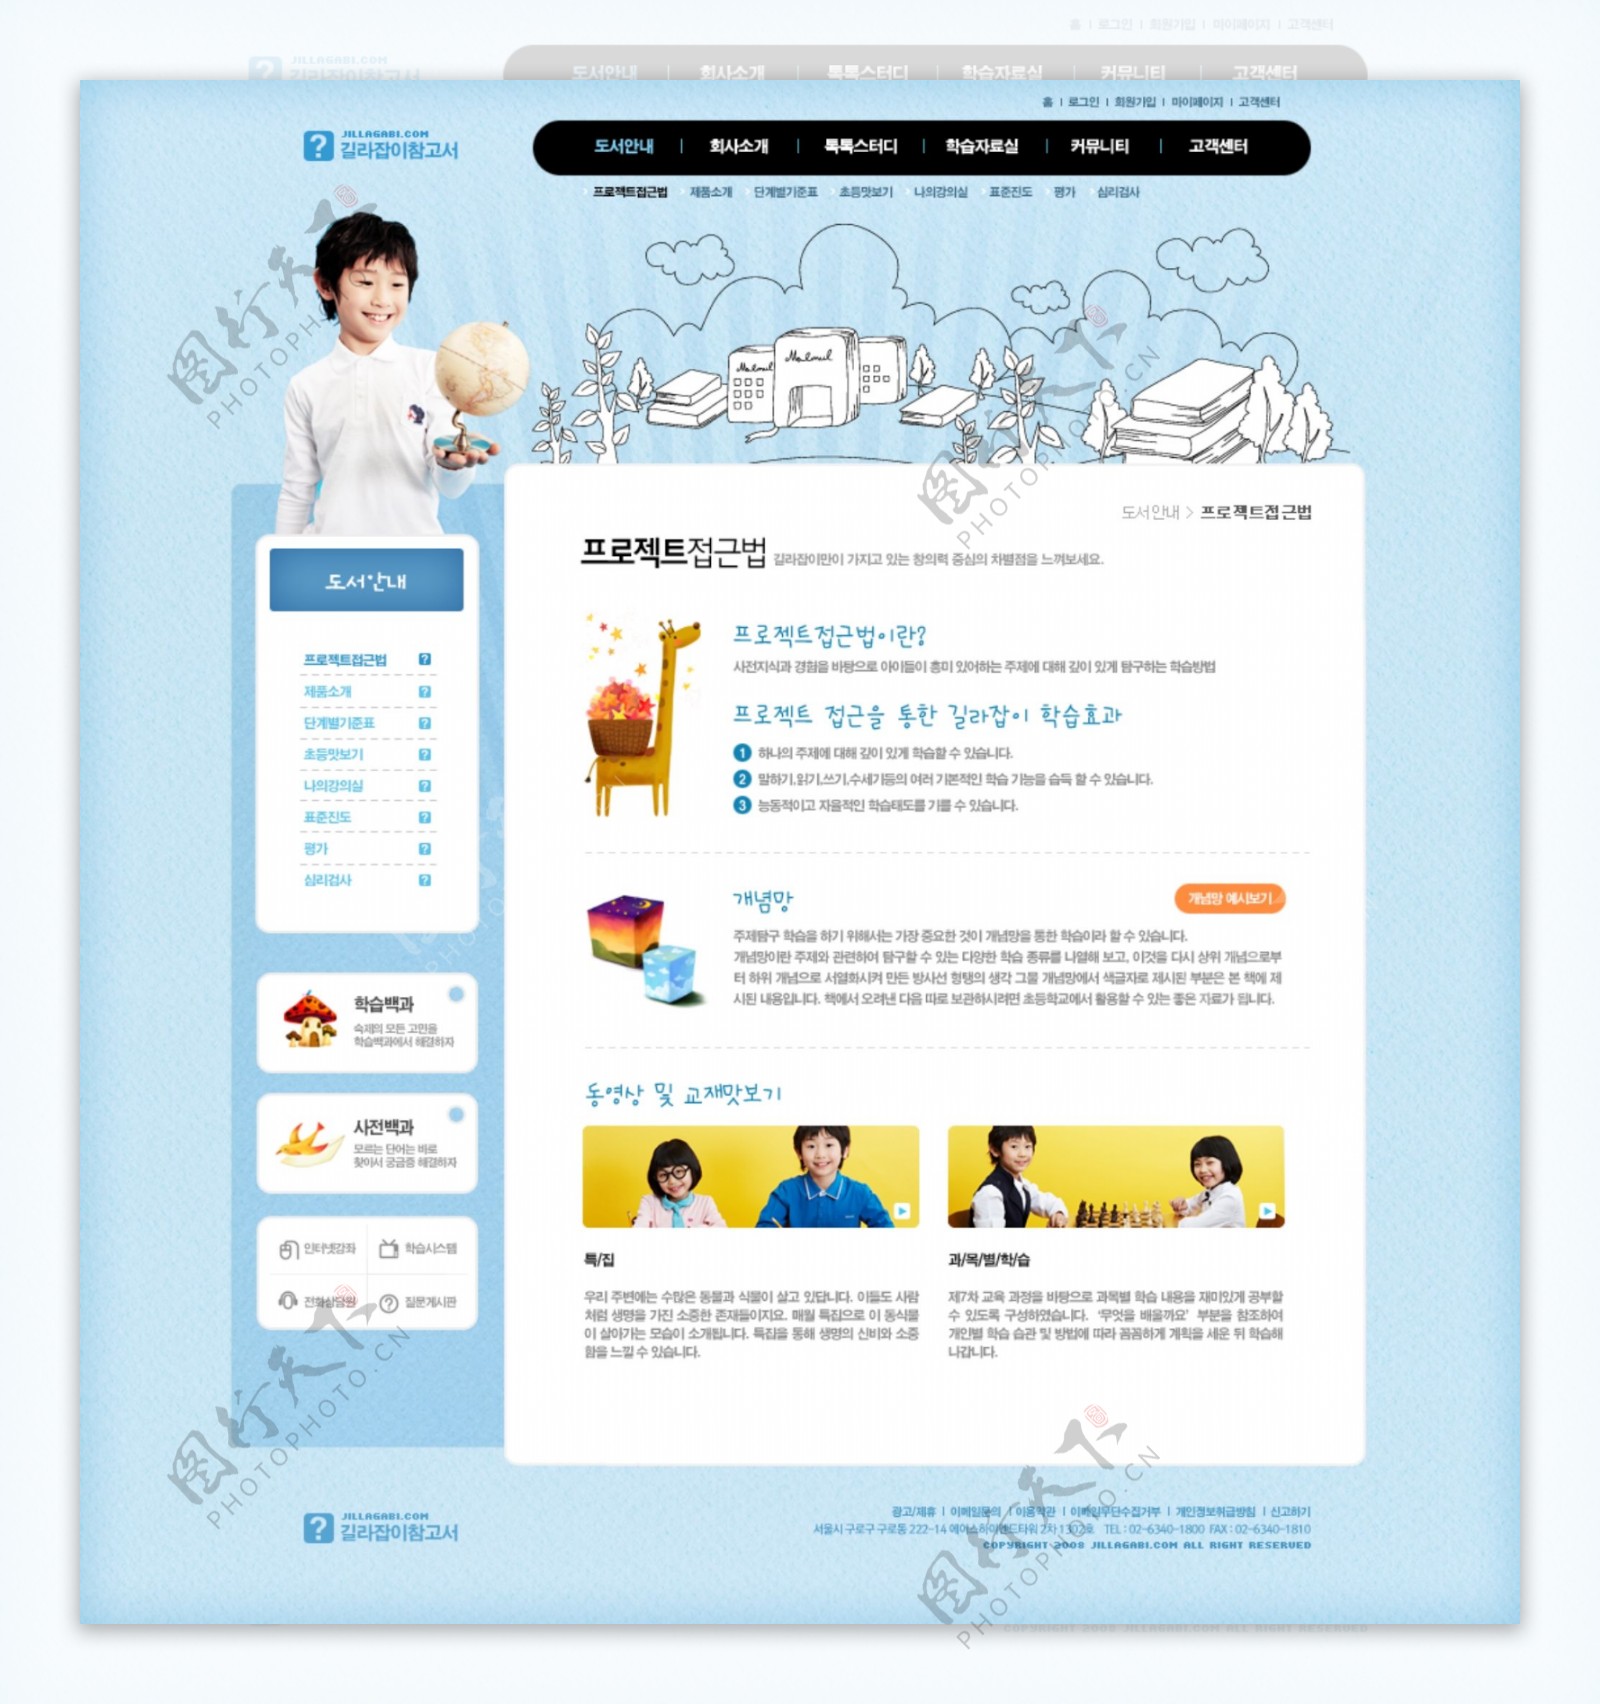 韩国儿童主题PSD网站模板